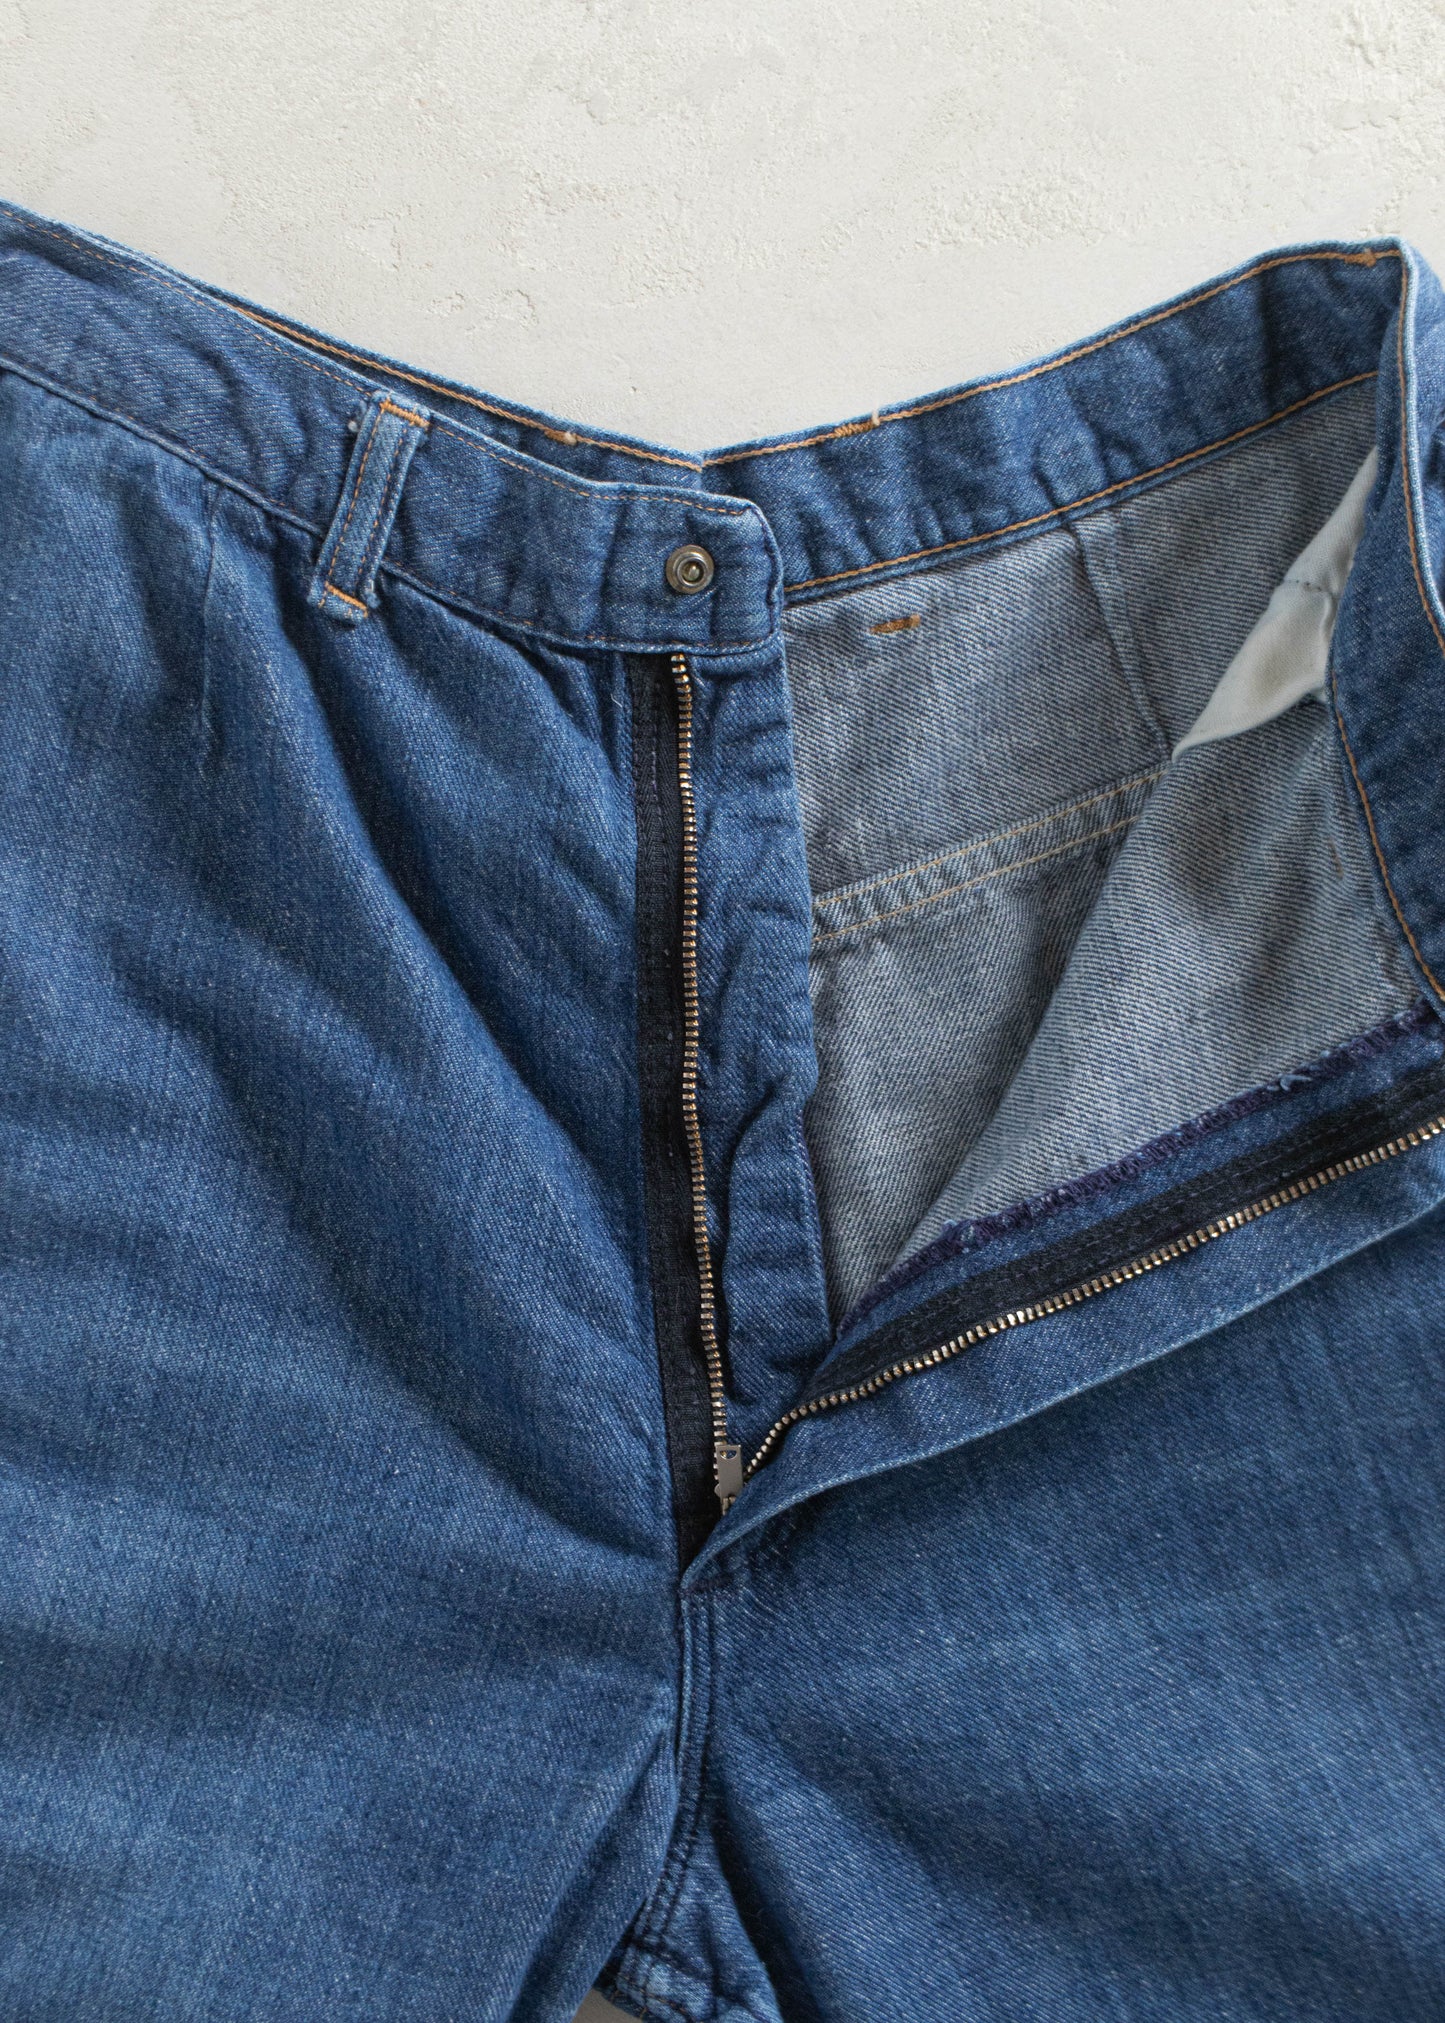 Vintage 1970s Wrangler Midwash Flare Jeans Size Women's 27 Men's 30